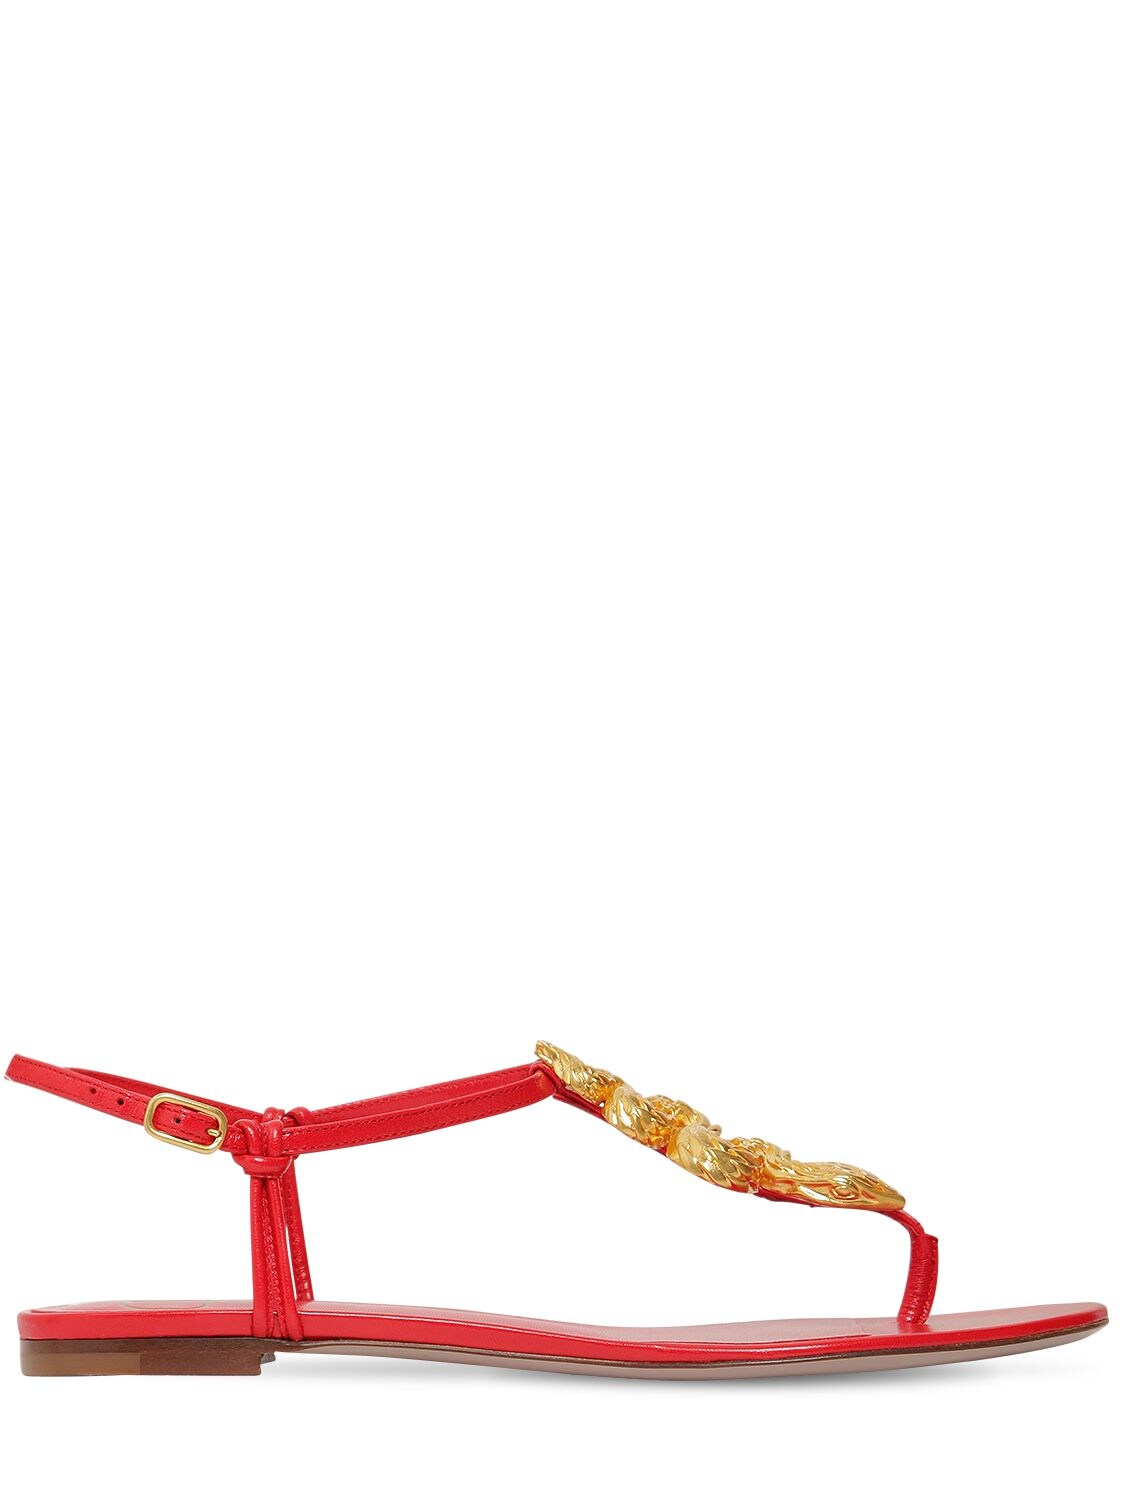 Valentino Garavani 10mm Maison Leather Sandals In Red